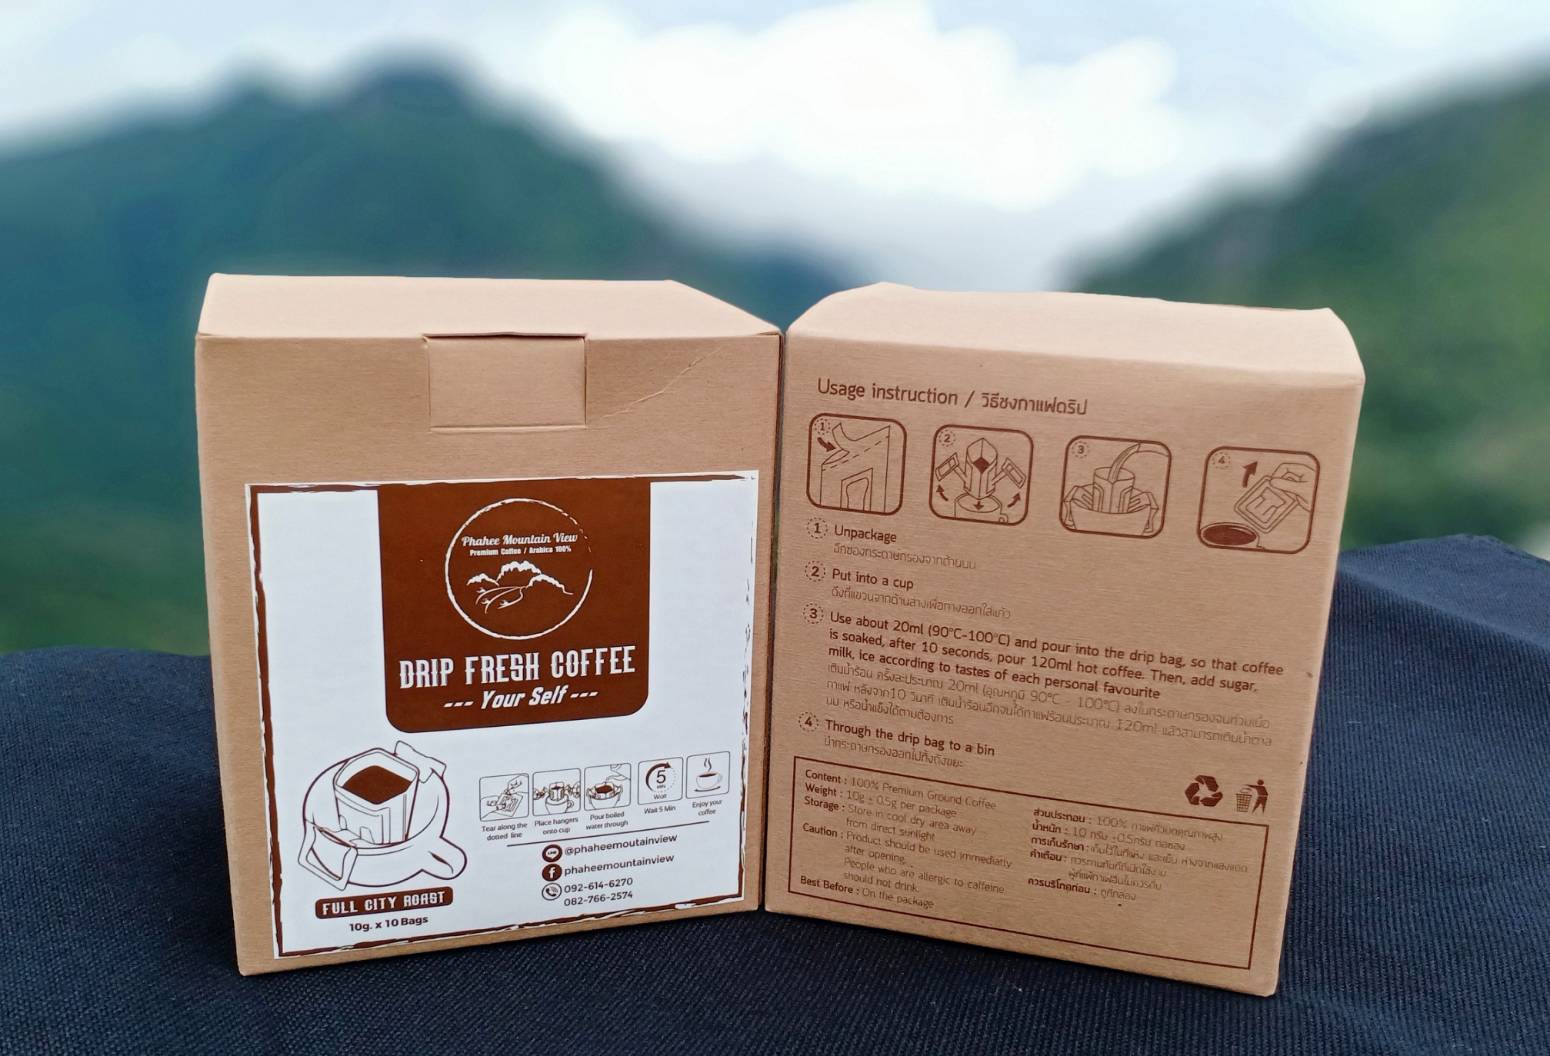 กาแฟสดดริปสำเร็จรูป(Drip Fresh Coffee) คั่วกลาง (Full City) Phahee Mountain View Coffee กาแฟผาฮี้ พันธุ์อราบิก้า 100%(Singel Origin) แบบกล่อง!!!